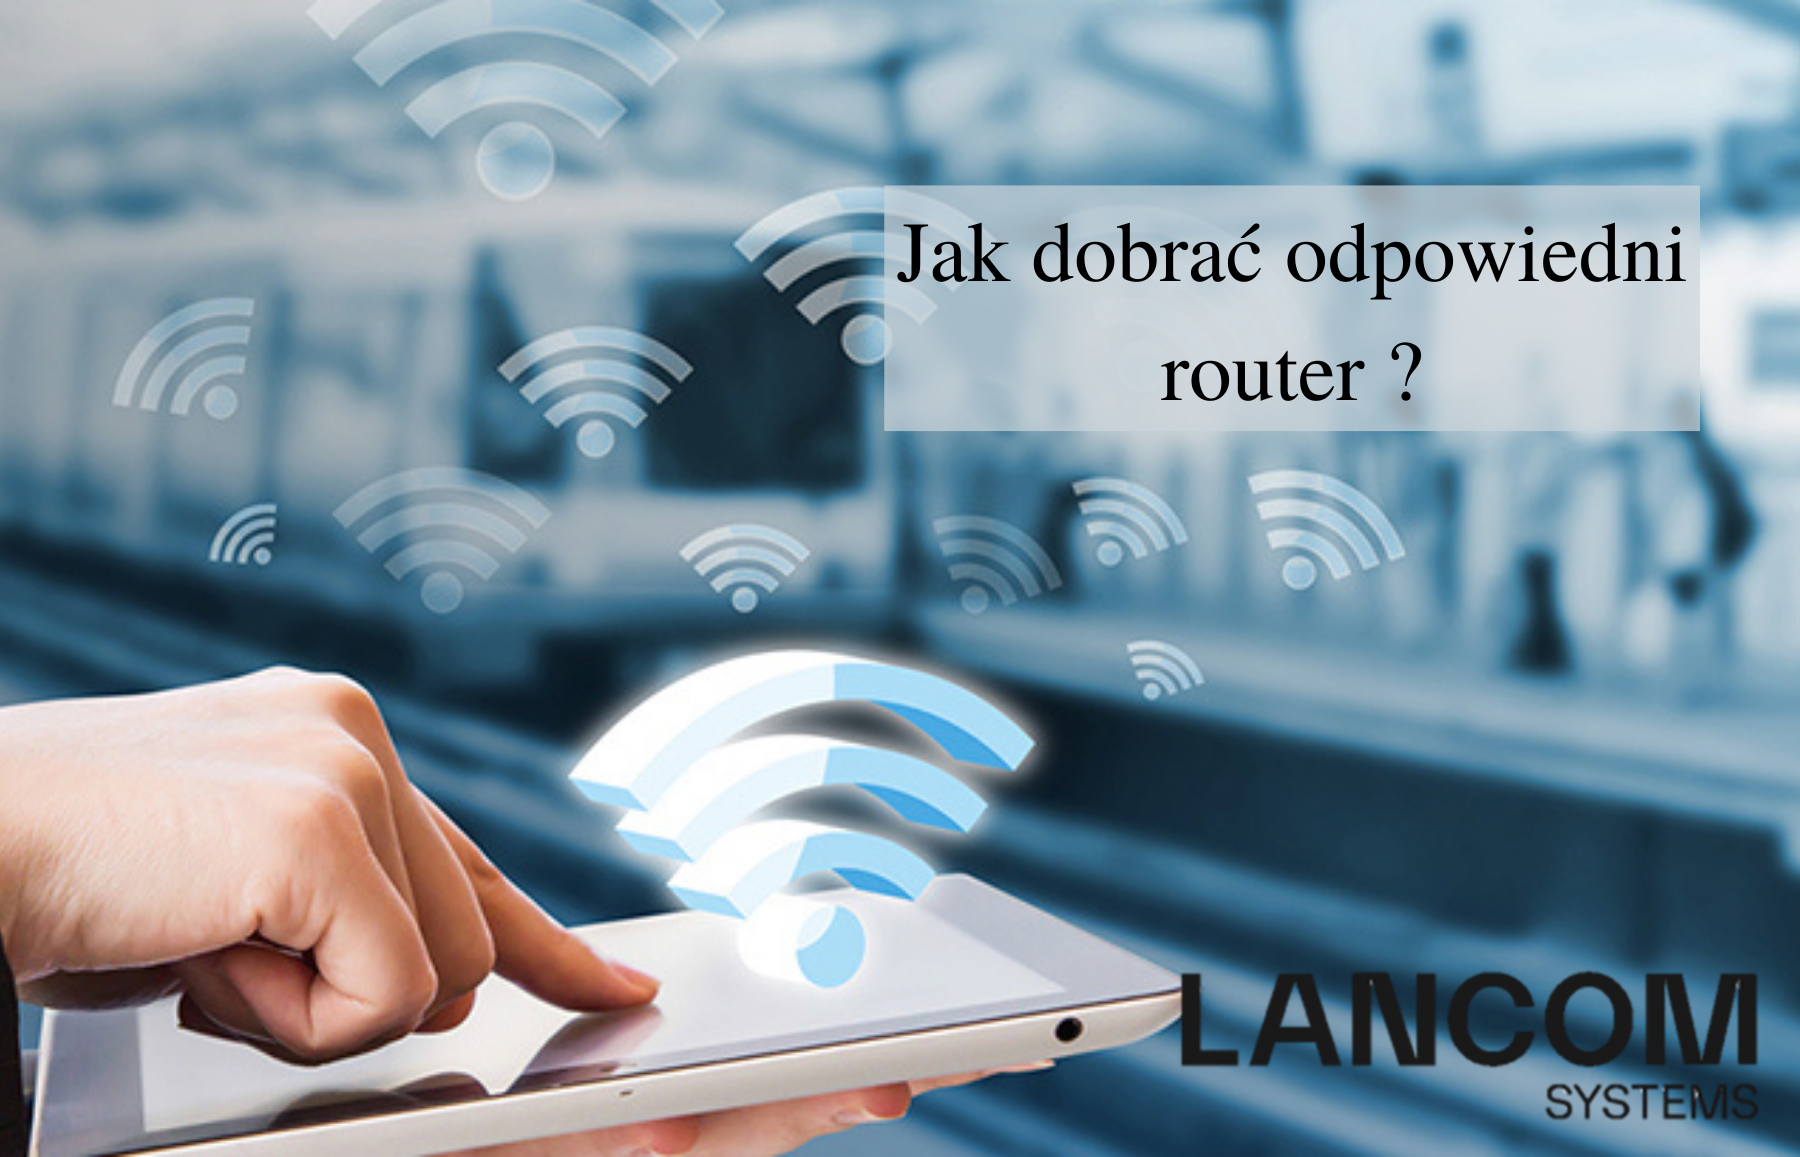 Dobór odpowiedniego routera jest kluczowy dla zapewnienia dostępu do Internetu wszystkim urządzeniom. Sprawdź jak dobrać odpowiedni router lancom